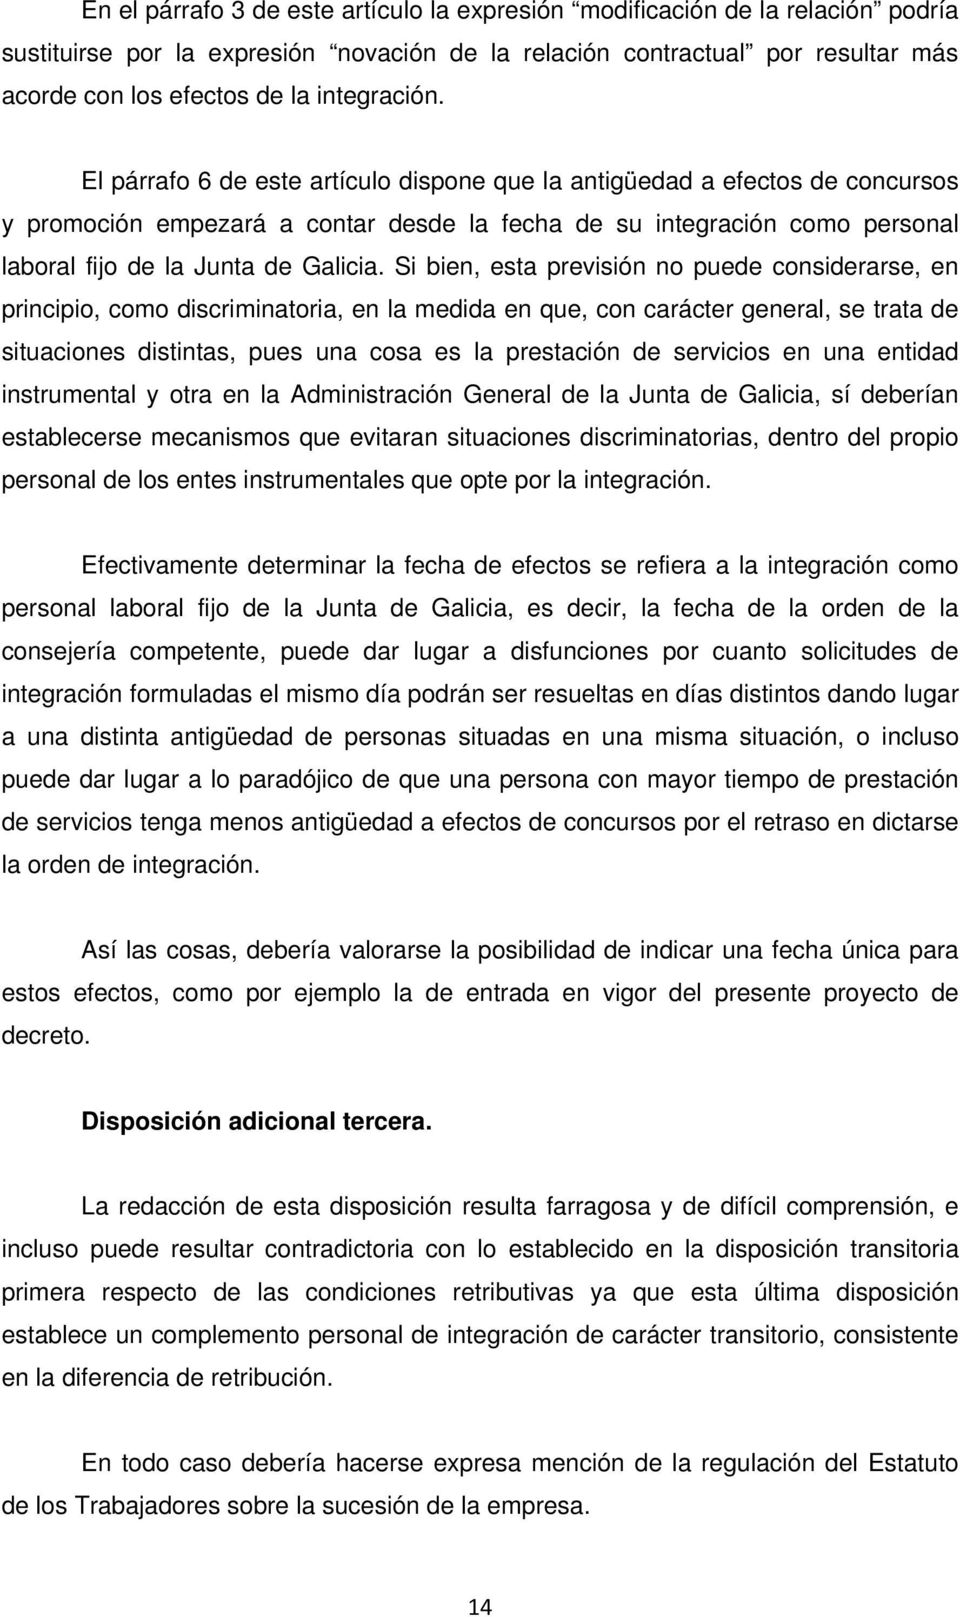 El párrafo 6 de este artículo dispone que la antigüedad a efectos de concursos y promoción empezará a contar desde la fecha de su integración como personal laboral fijo de la Junta de Galicia.